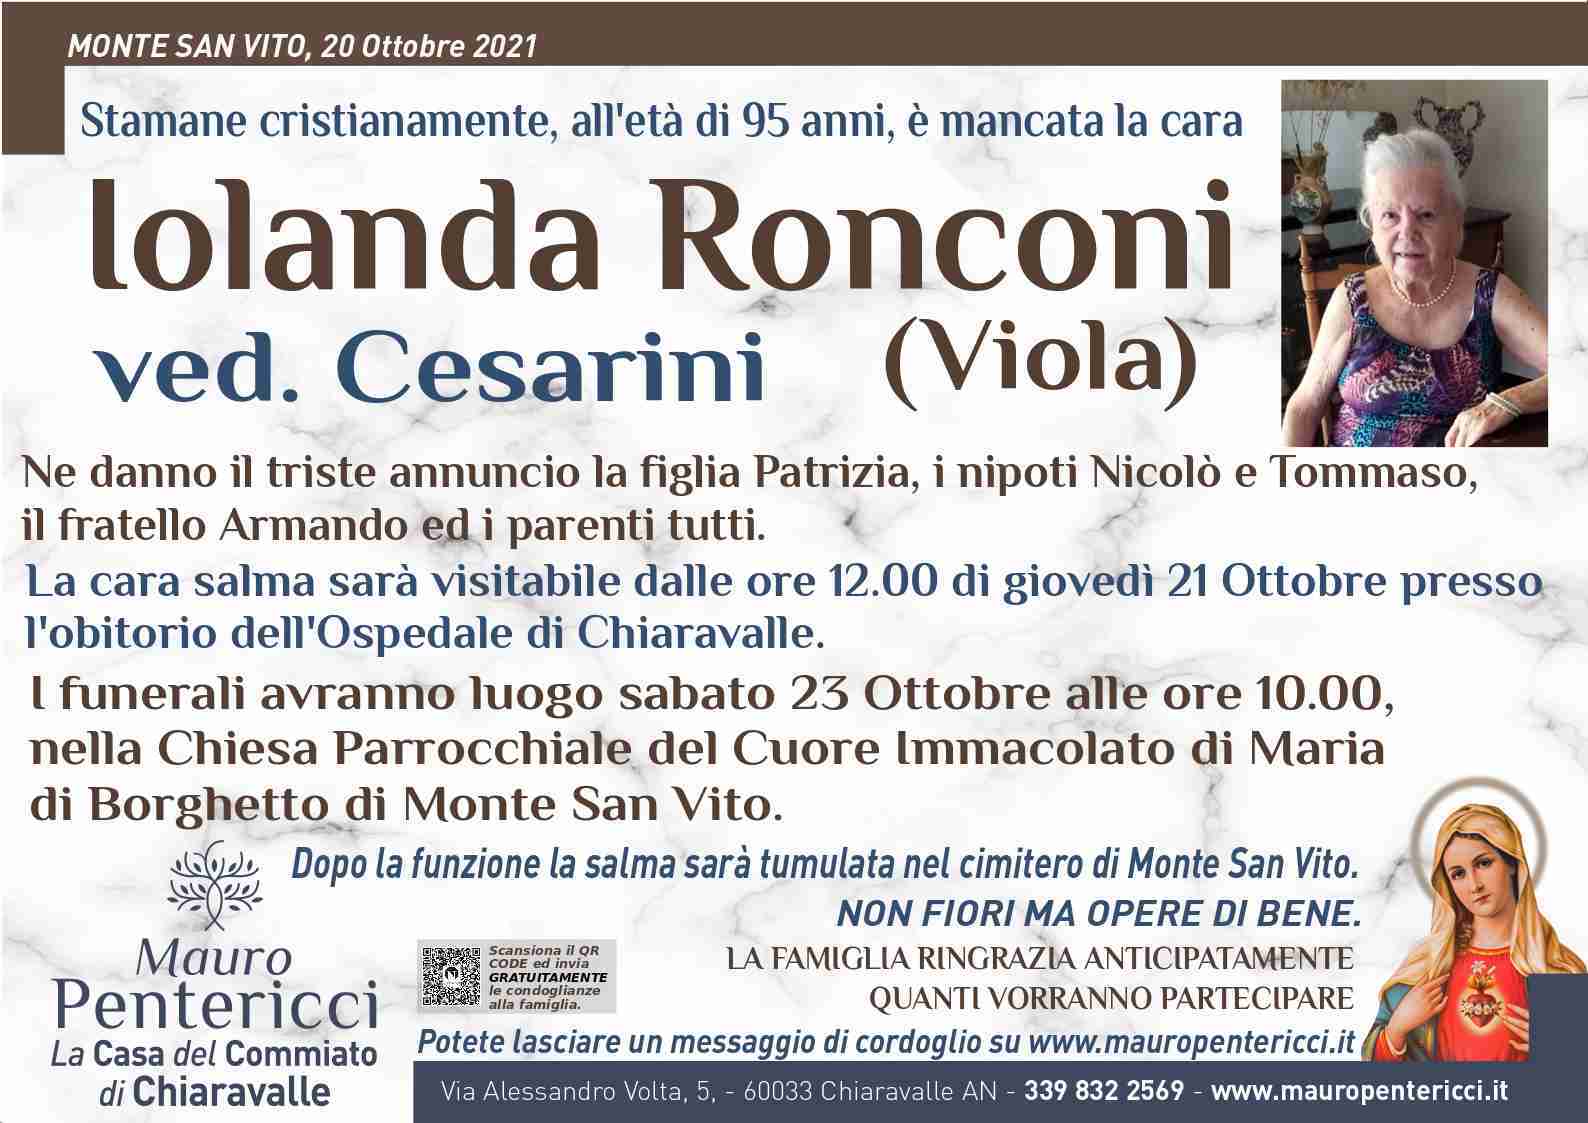 Iolanda Ronconi